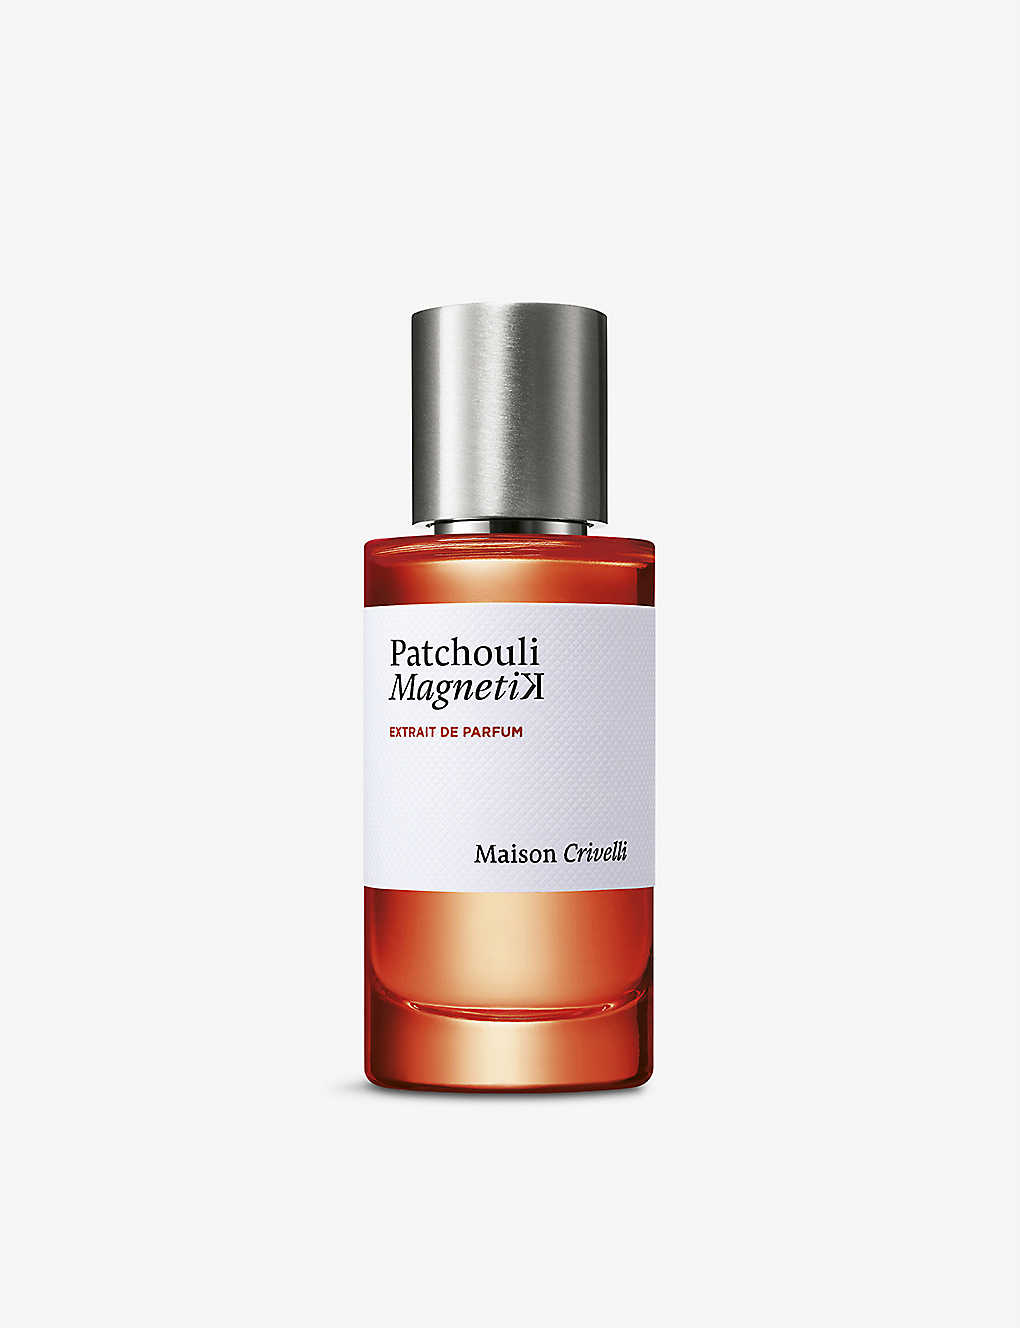 Maison Crivelli Patchouli Magnetik Limited-edition Extrait De Parfum 50ml